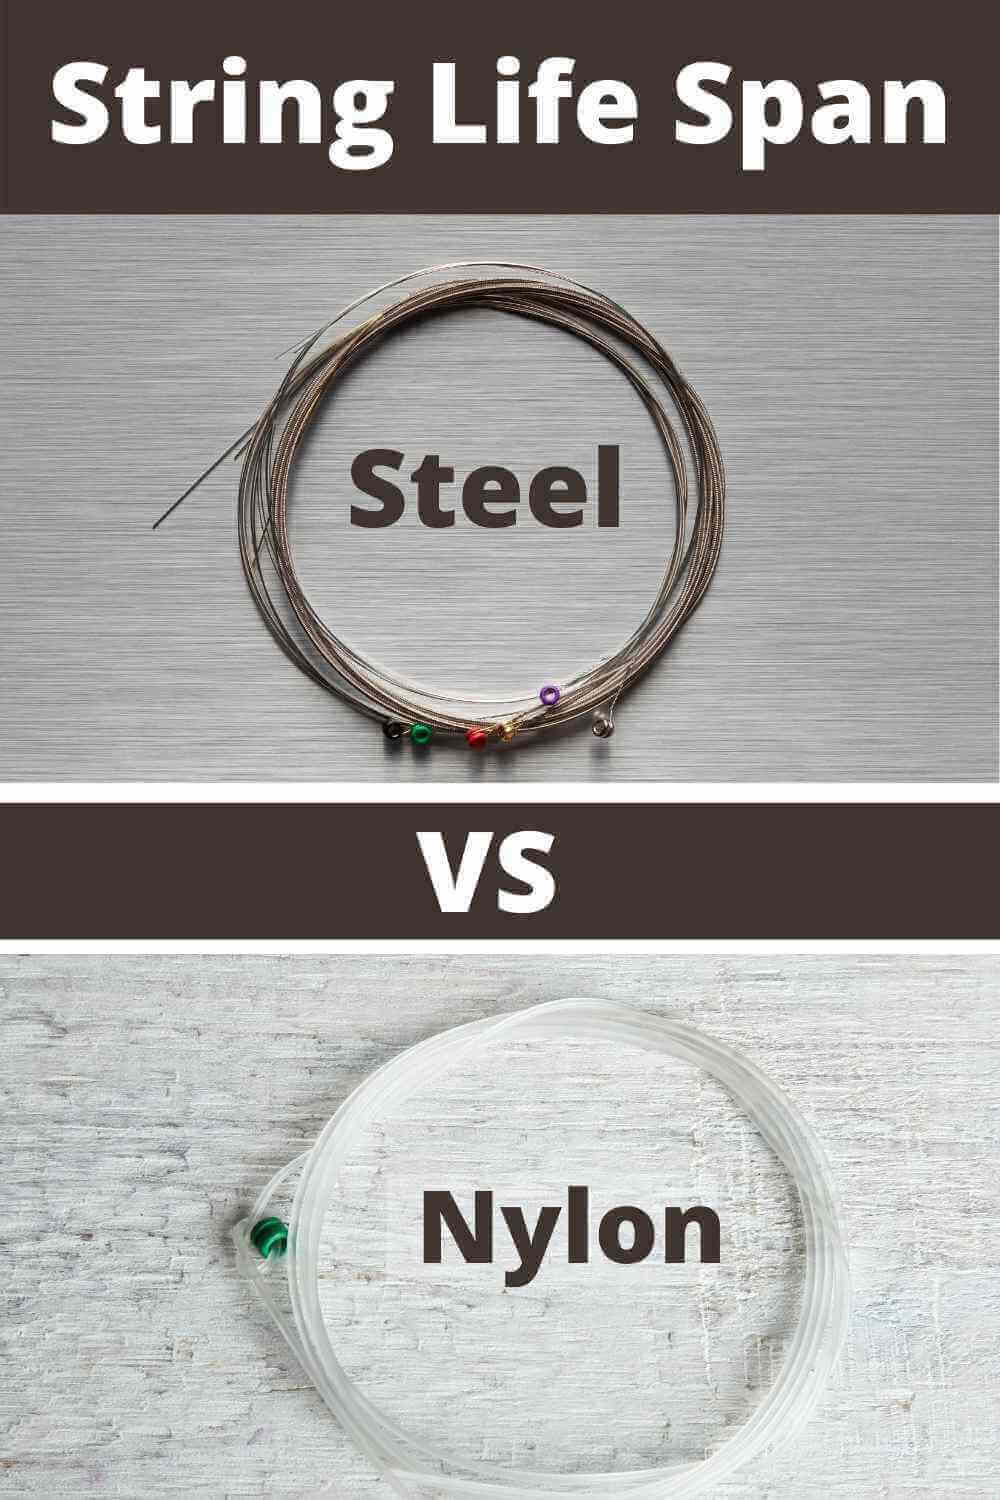 String Life Span Steel vs Nylon